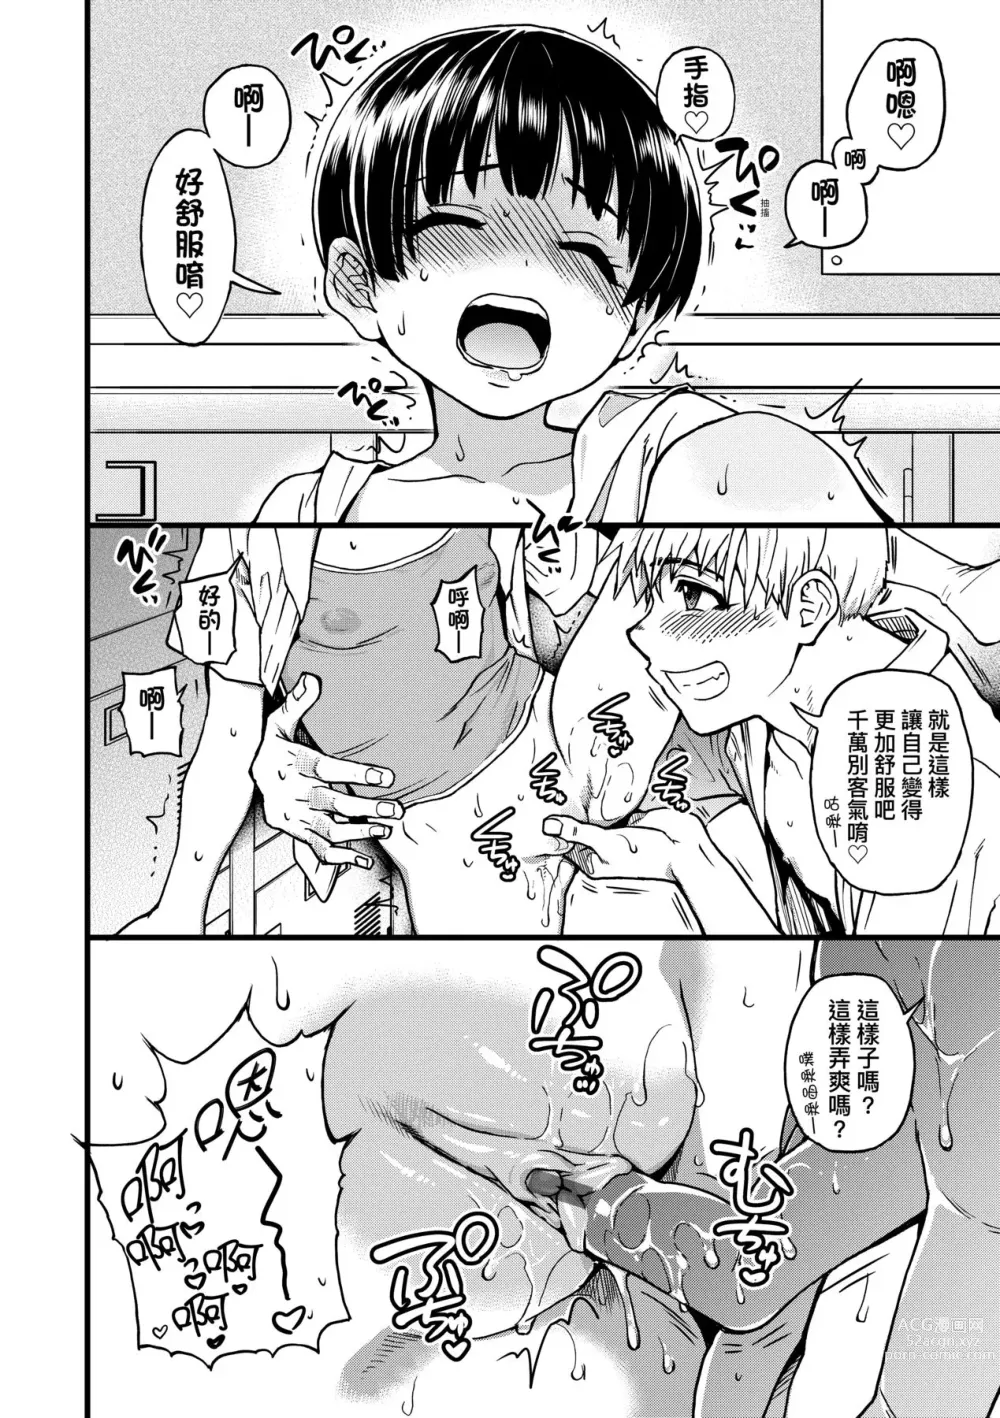 Page 111 of manga 靠我的精液本復快癒!!